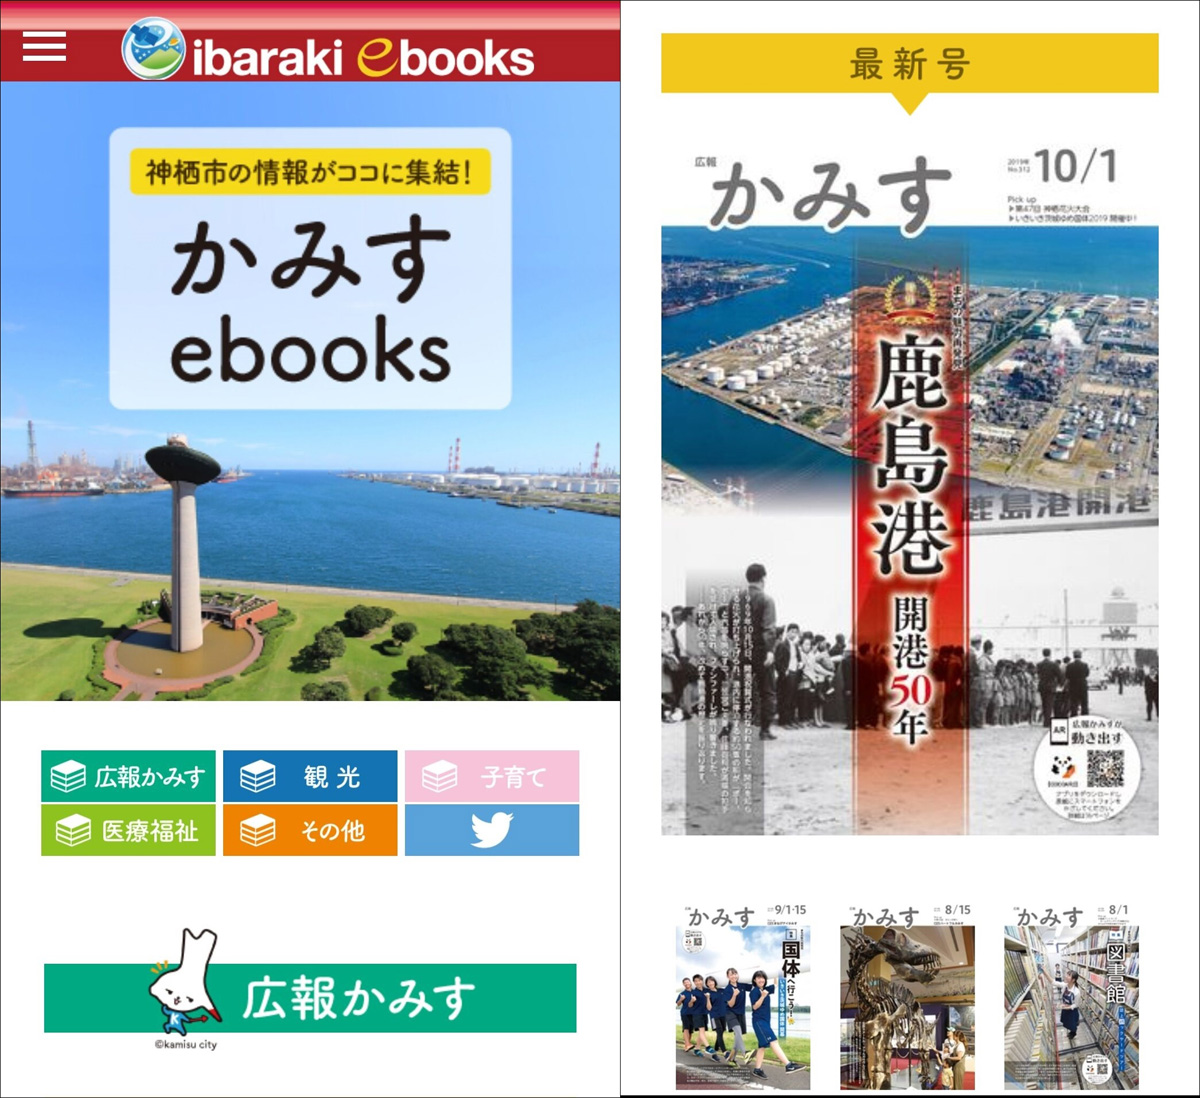 神栖市の発行物を集めた電子書籍特設サイト「Ibaraki-ebooks」にもアクセスできる